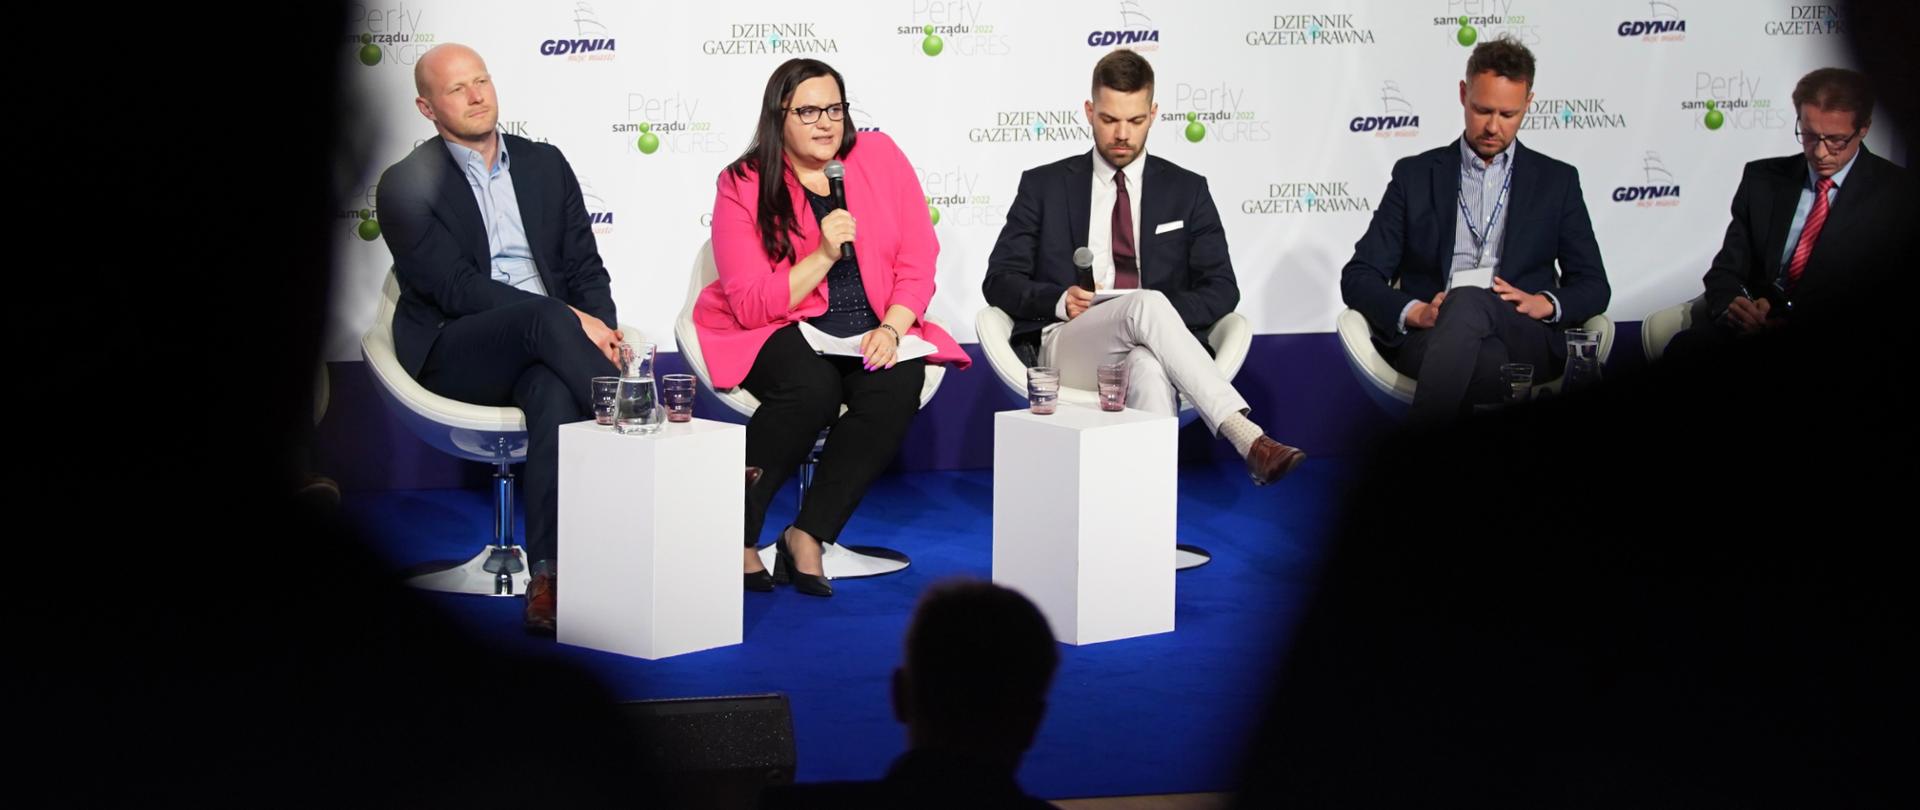 Pięć osób na scenie w fotelach rozmawia w panelu. Wiceminister Małgorzata Jarosińska-Jedynak z mikrofonem.